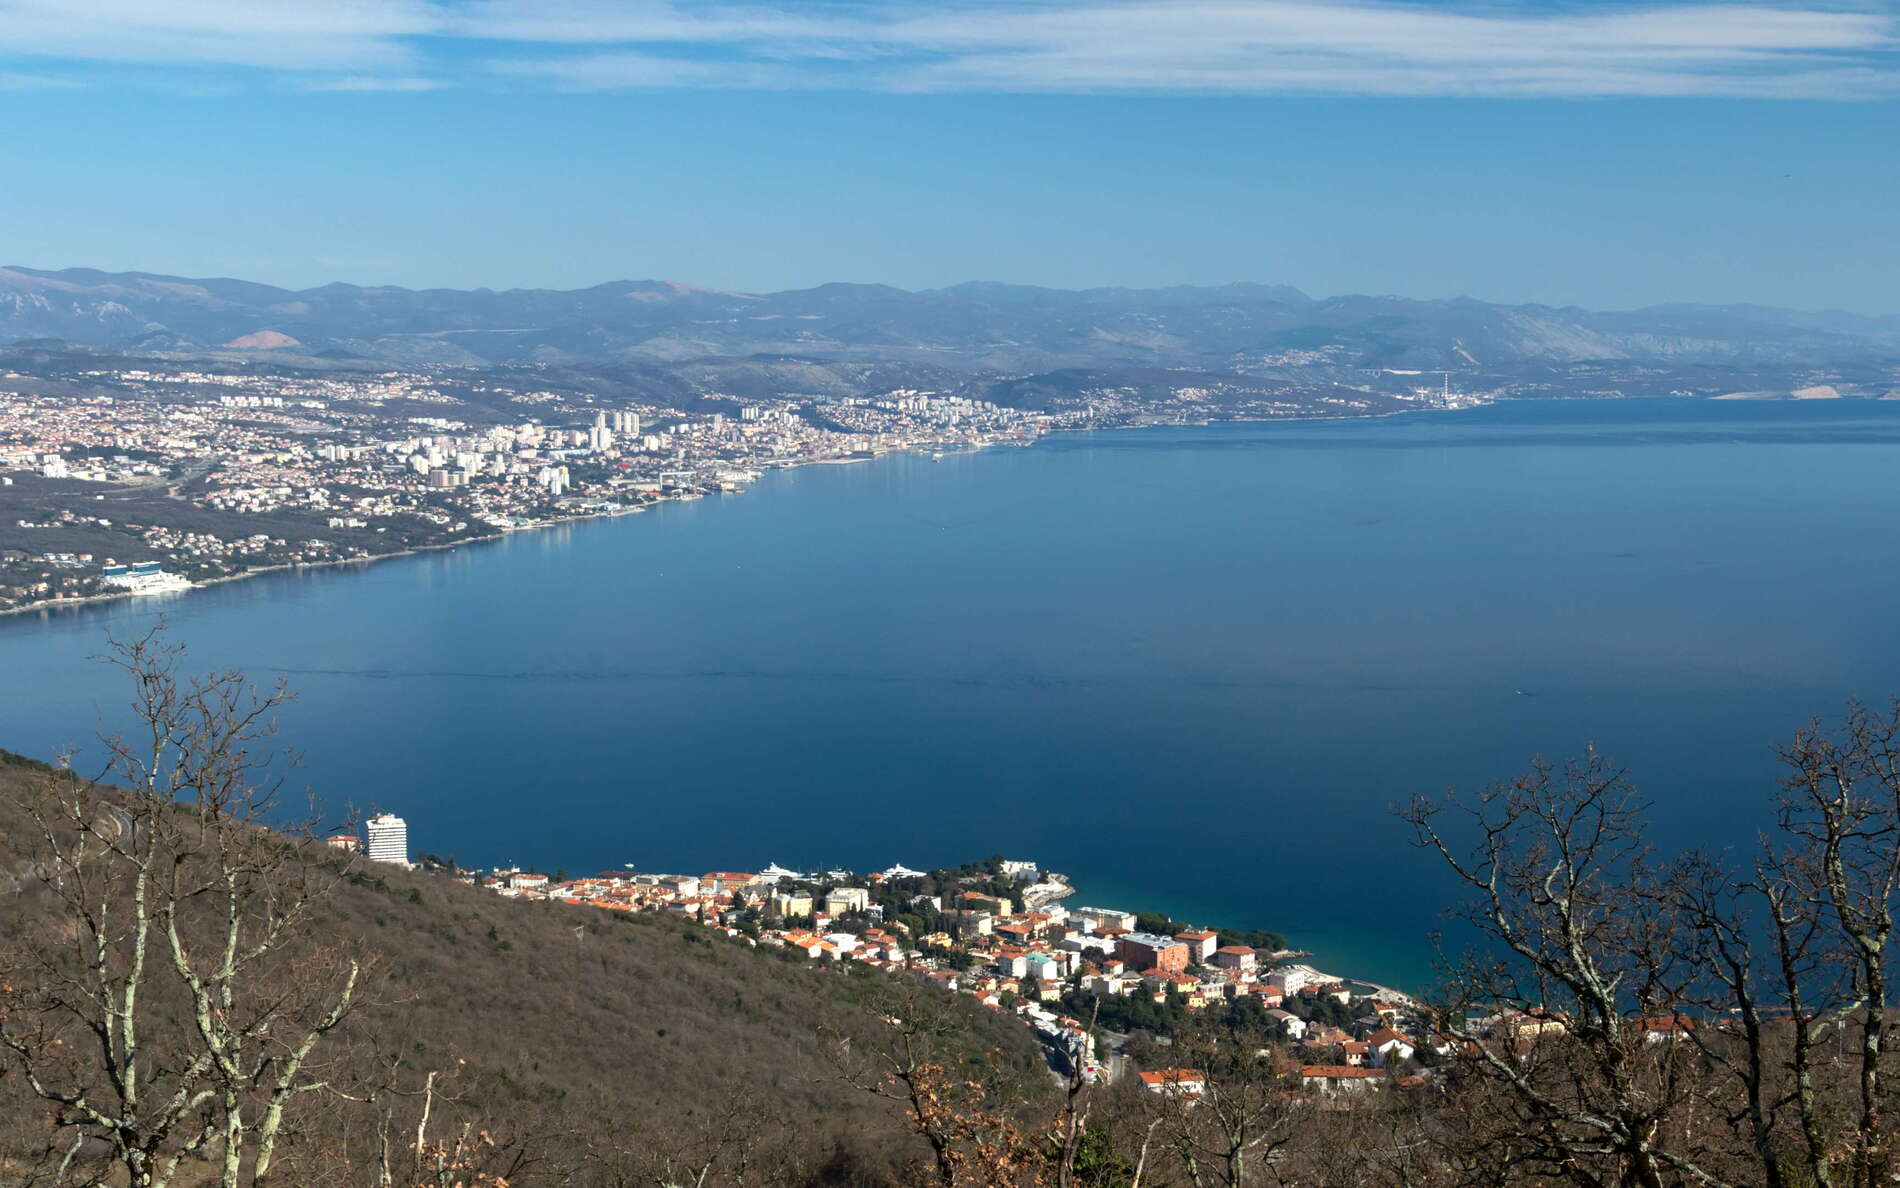 Kvarner Gulf with Opatija and Rijeka